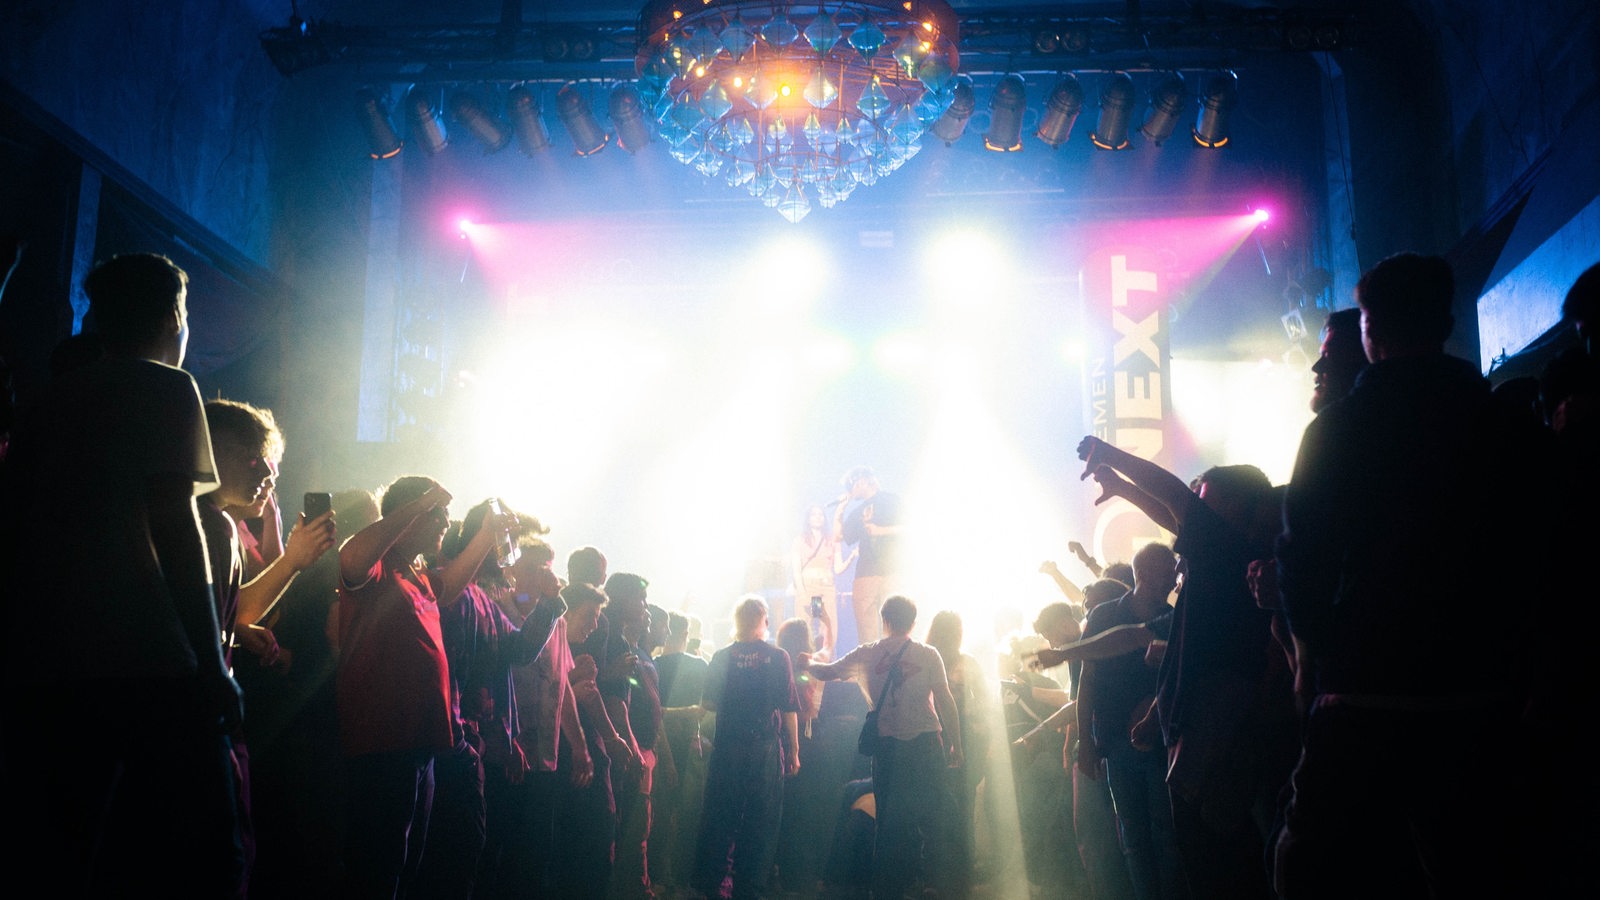 Publikum bildet ein Moshpit während Künstler auf der Bühne performt.